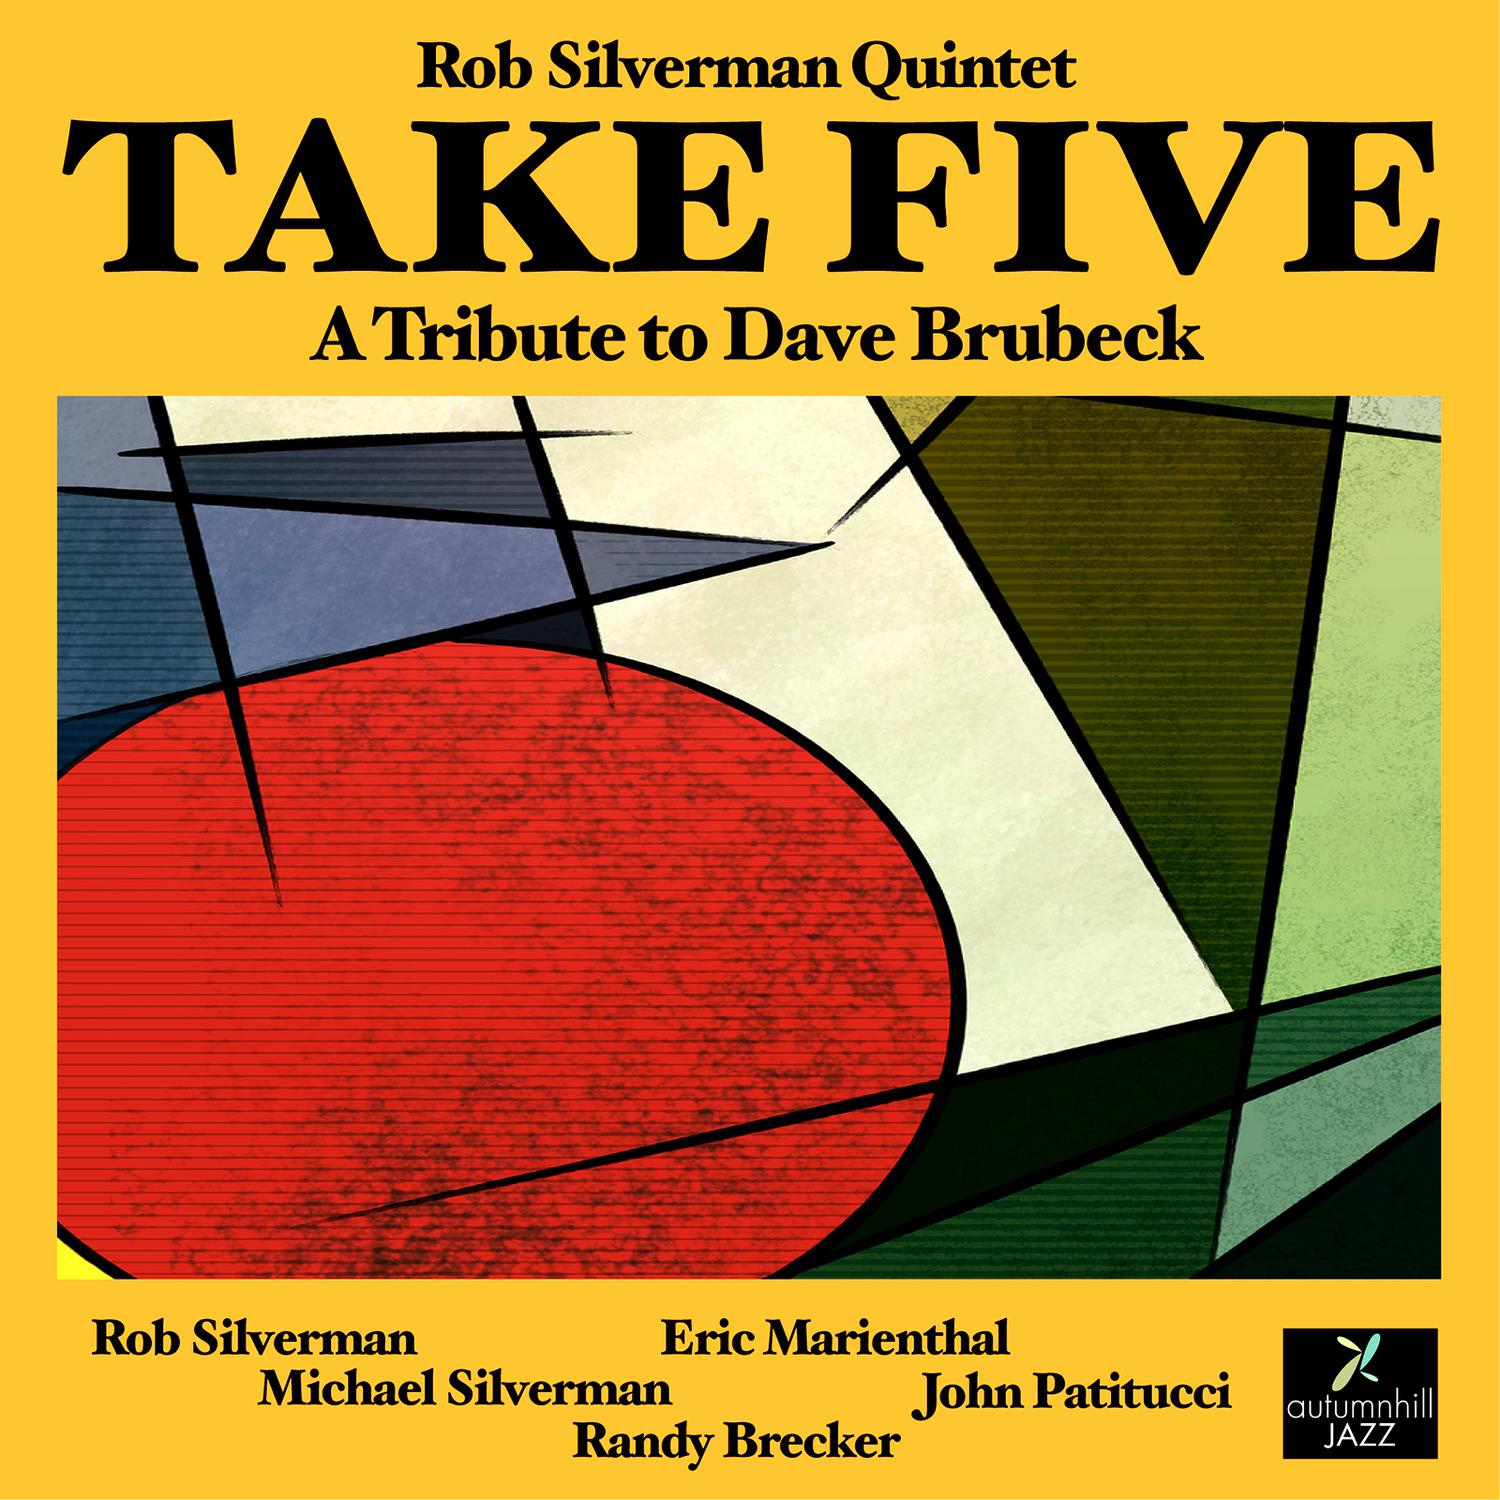 Rob Silverman Quintet - Take Five (feat. Randy Brecker, John Patitucci, Eric Marienthal & Michael Silverman)